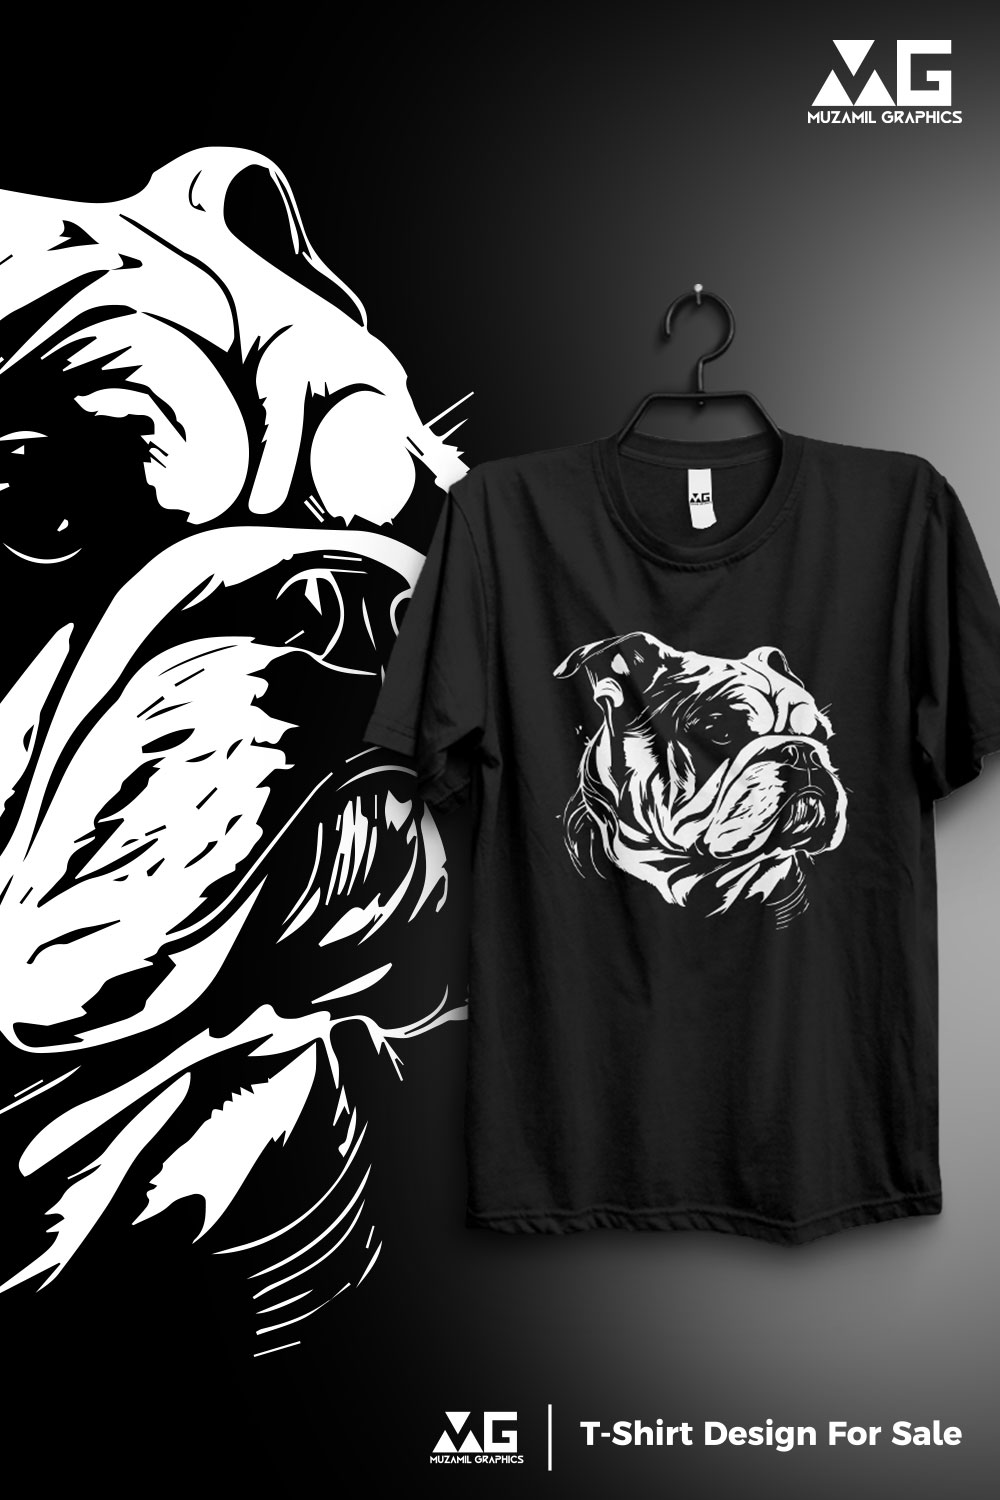 Bull dog T-shirt design pinterest preview image.